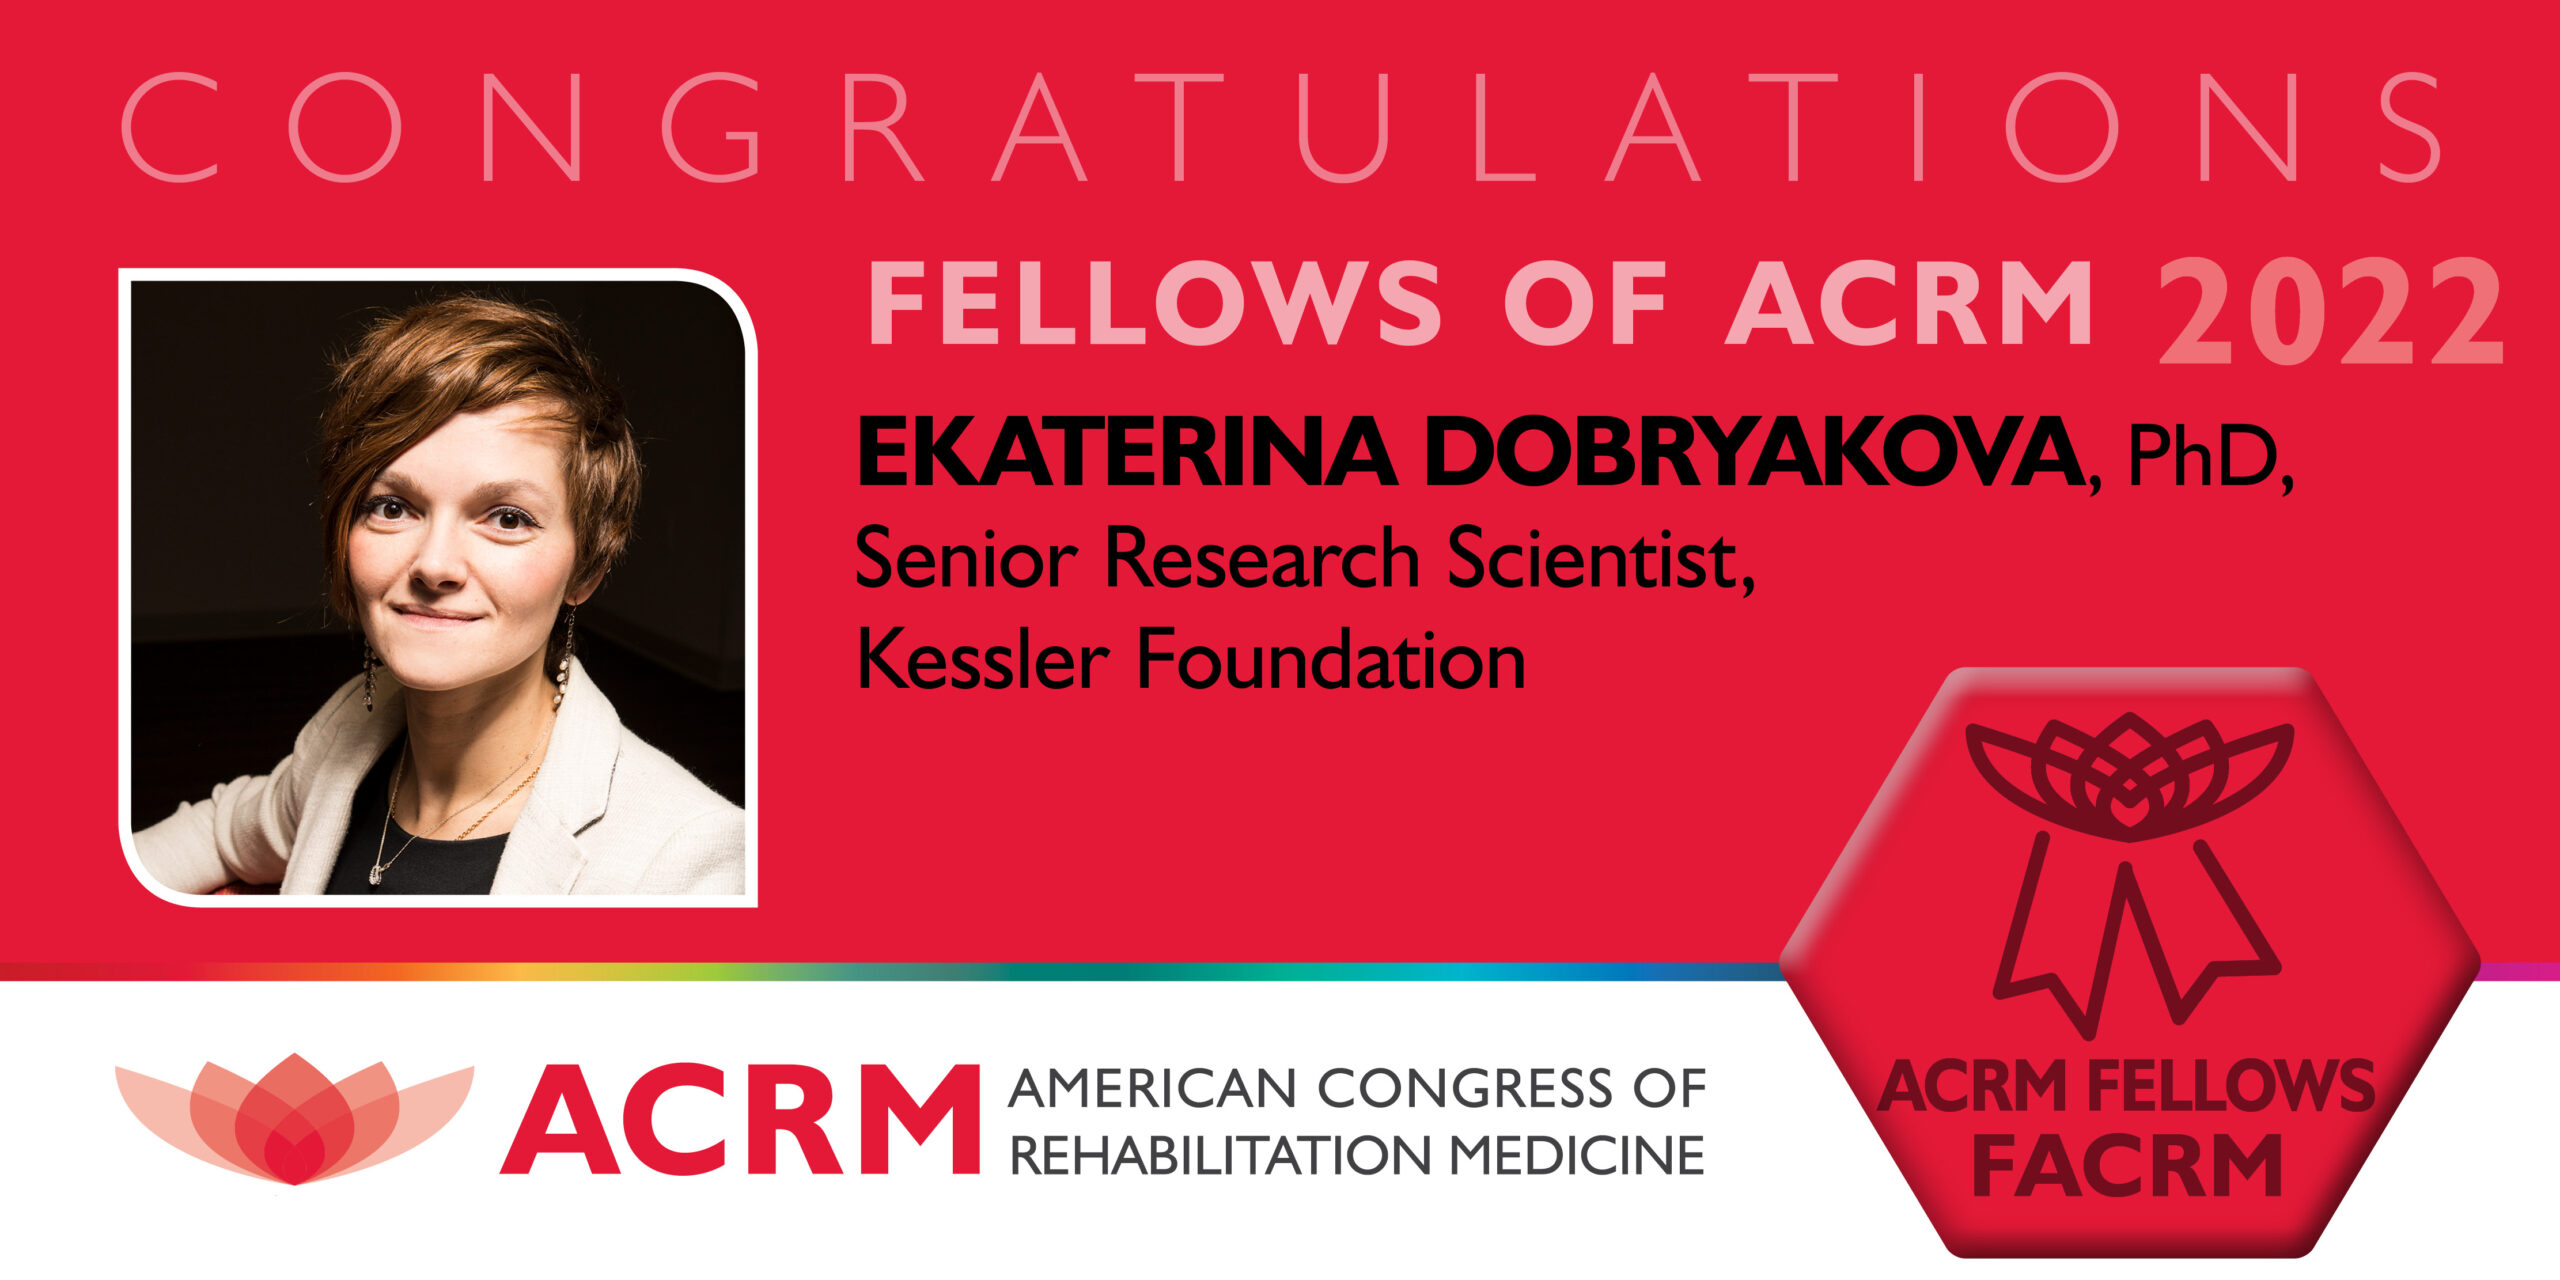 Dr. Ekaterina Dobryakova is a 2022 Fellow of ACRM 